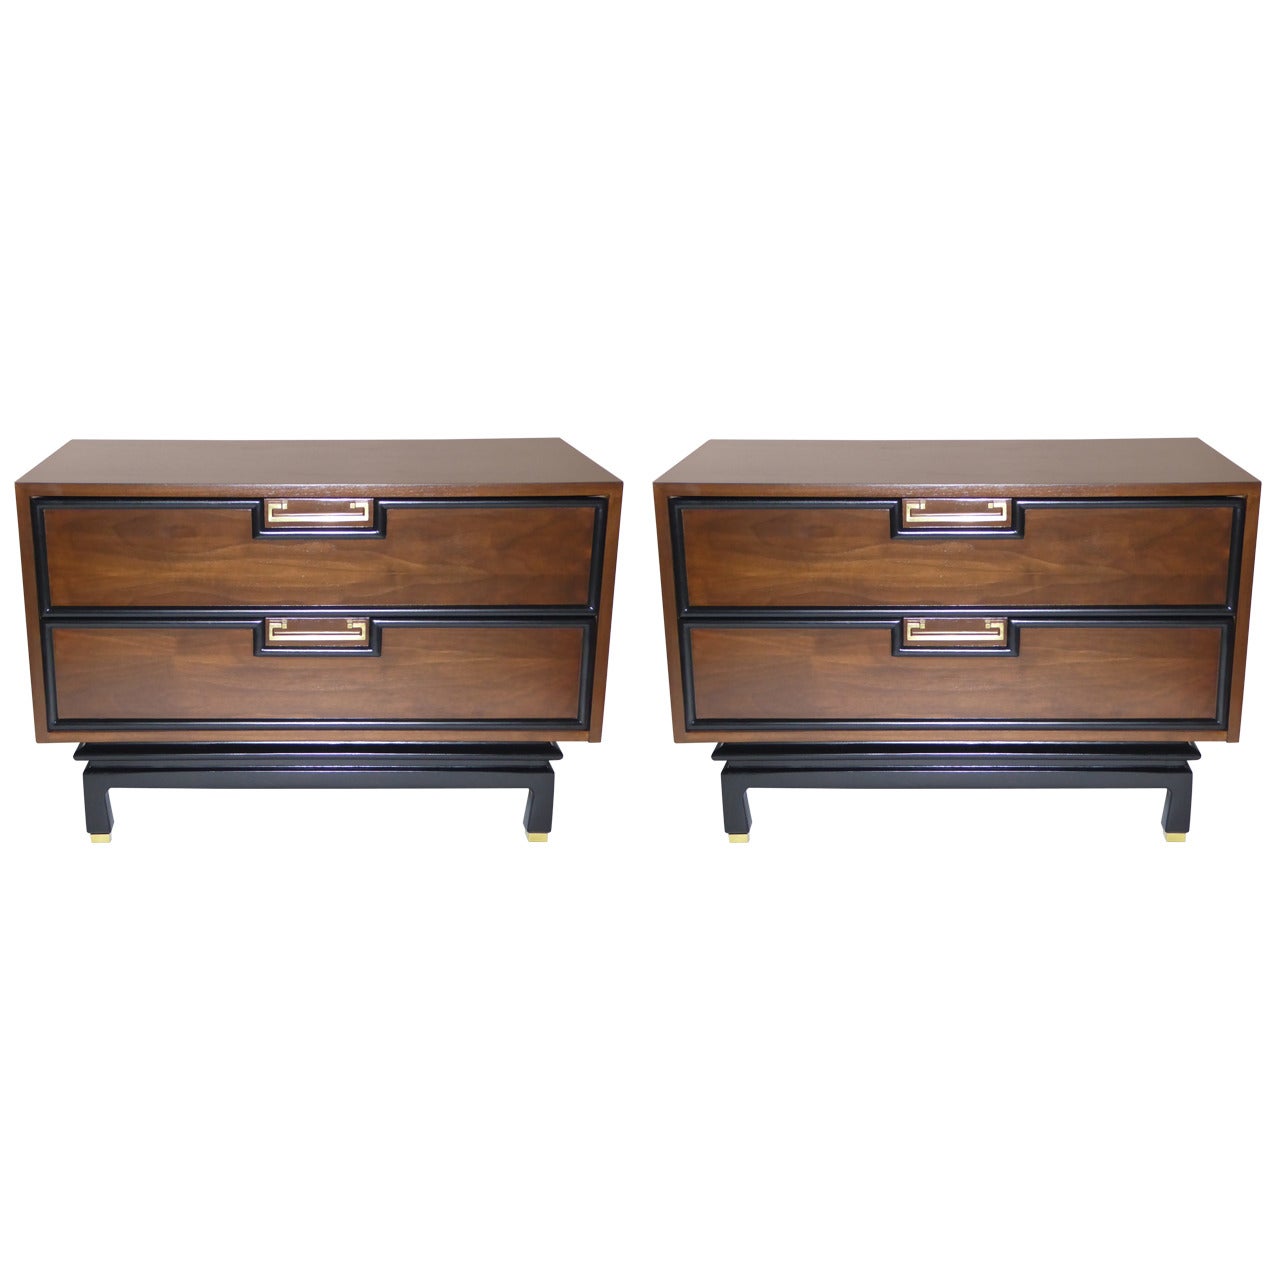 Sleek 1950s Modern Walnut Two-Drawer Bedside Tables